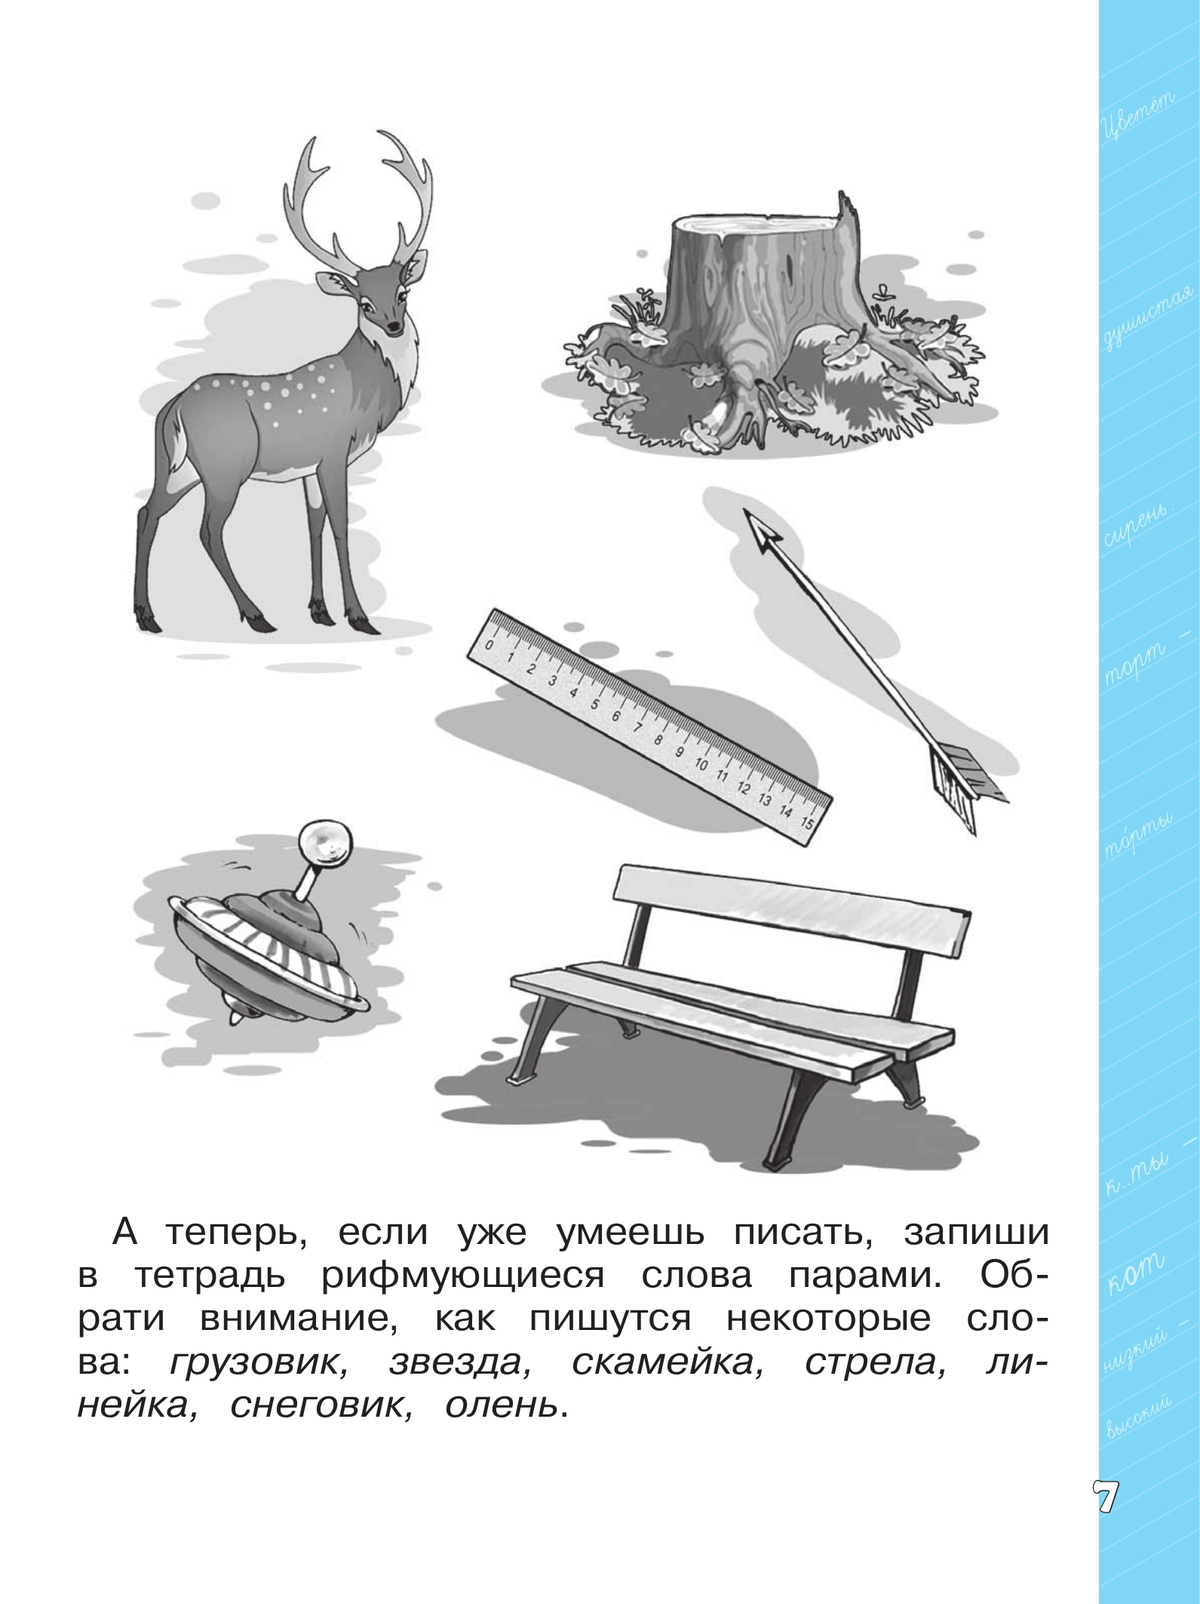 Языковая грамотность. Русский язык. Развитие. Диагностика. 1-2 классы 2